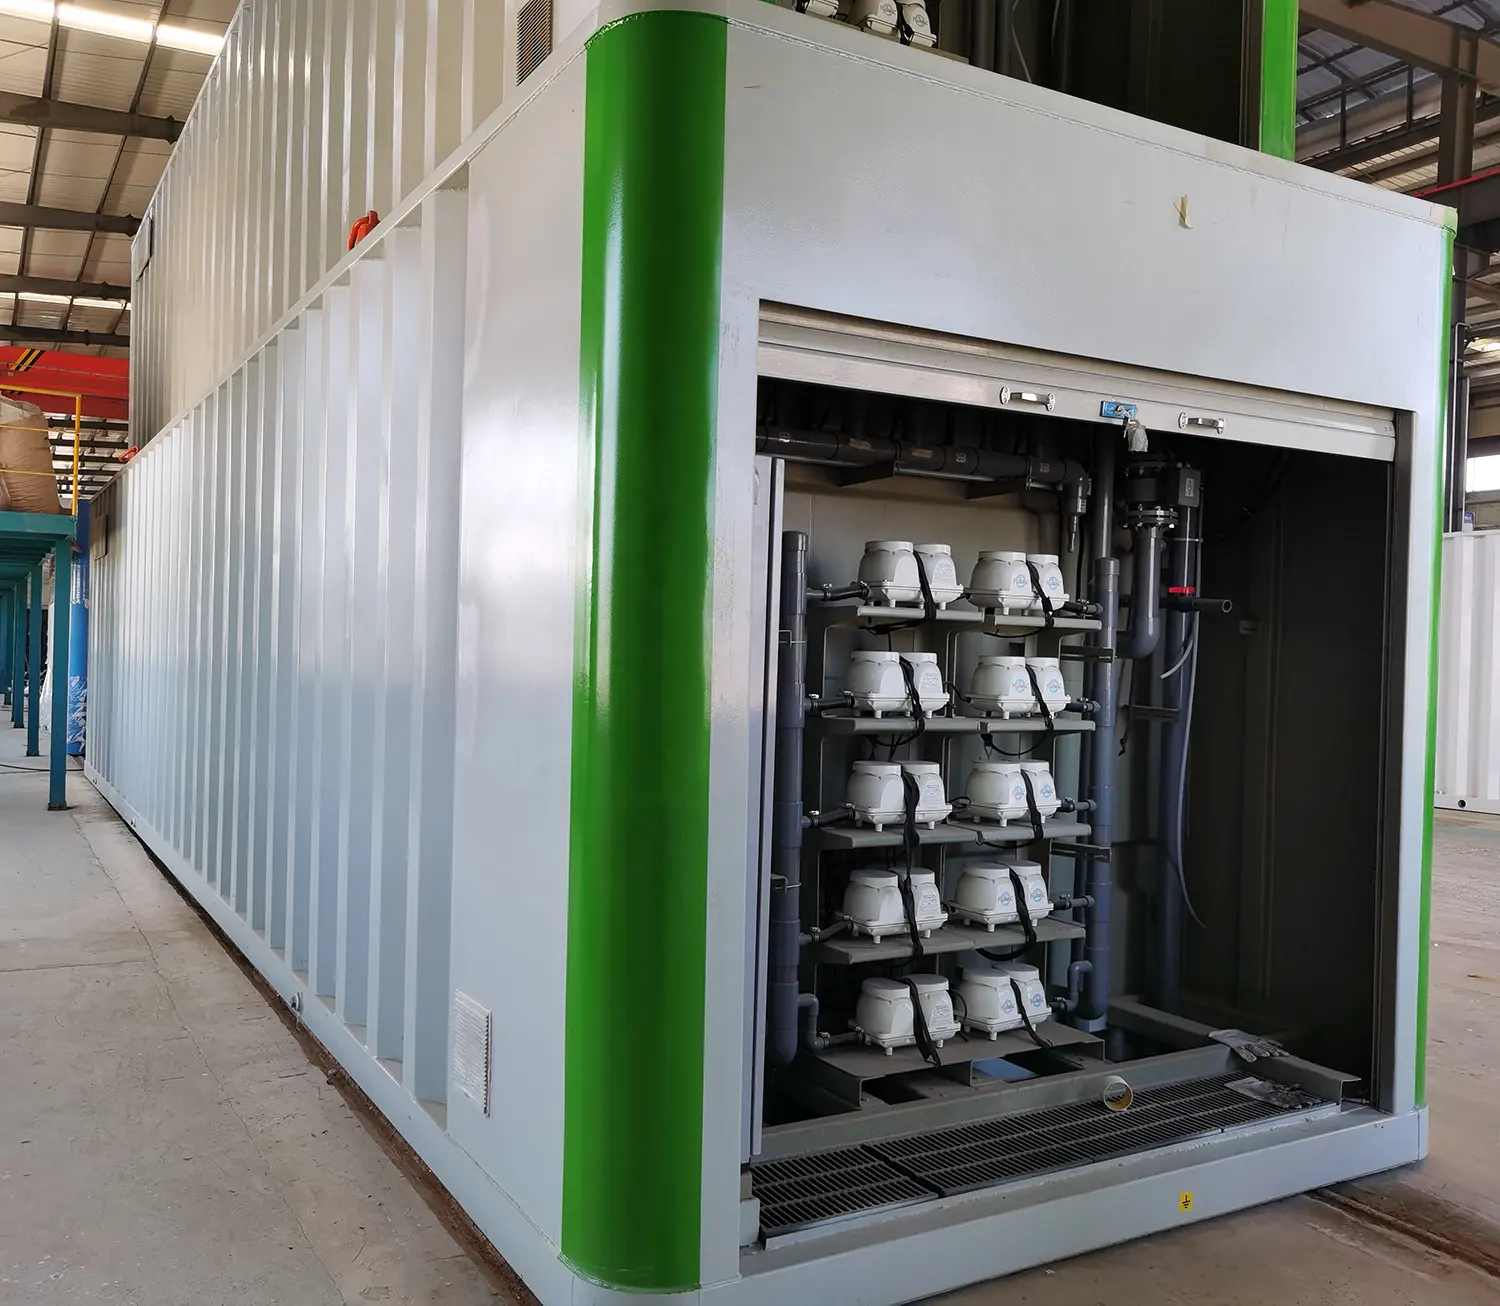 MBBR containerisiertes Geflügelschlachtungs- und Verarbeitungspaket Kläranlage-System für Abwasser